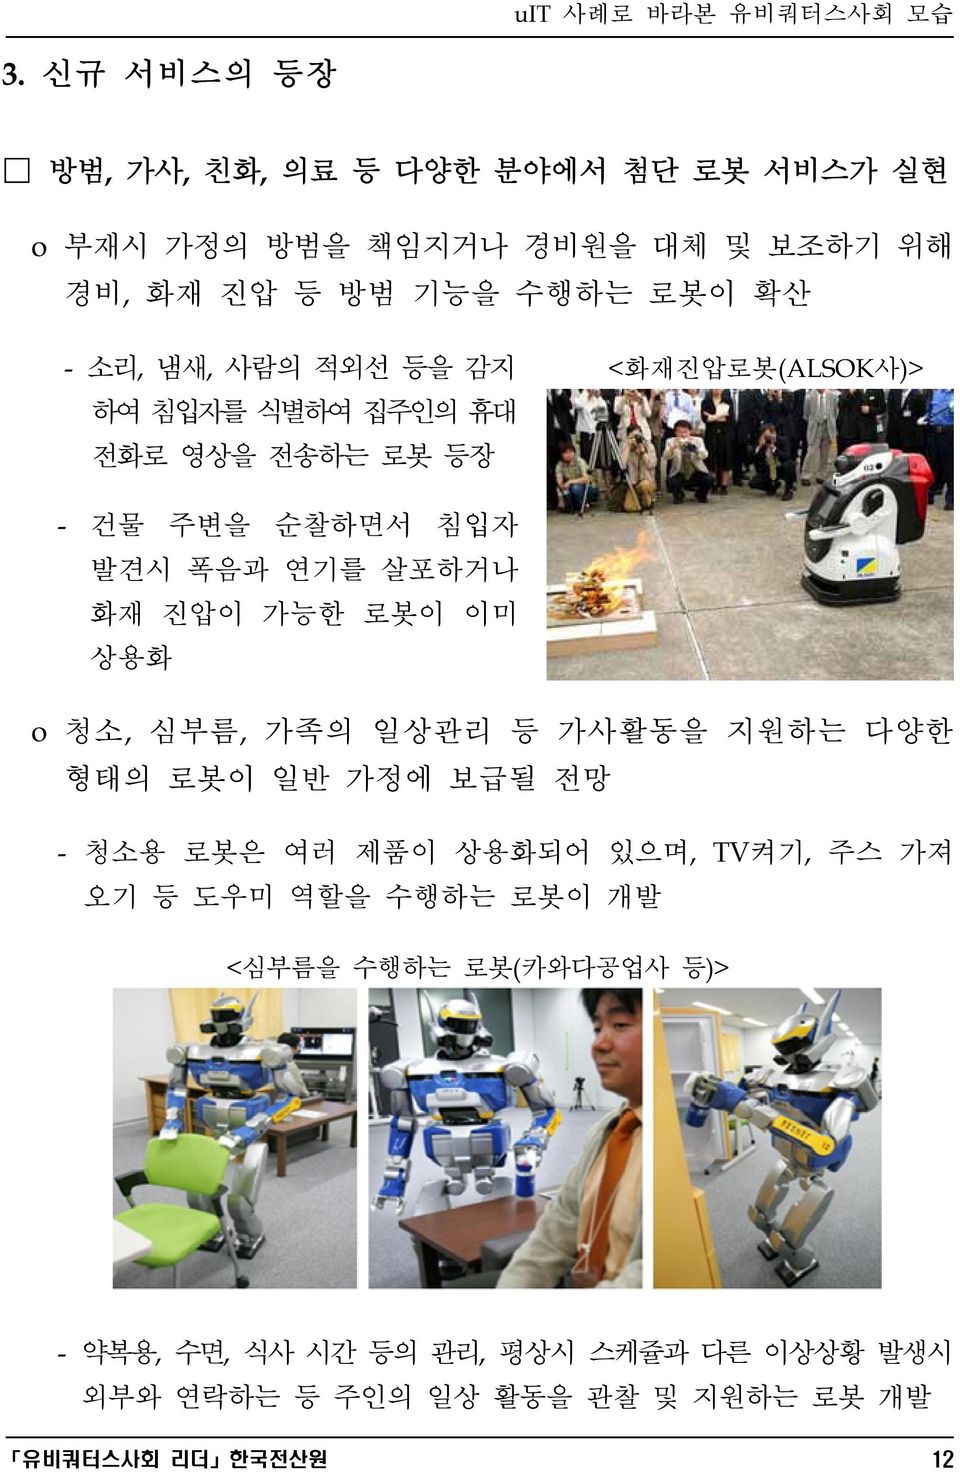 이미 상용화 o 청소, 심부름, 가족의 일상관리 등 가사활동을 지원하는 다양한 형태의 로봇이 일반 가정에 보급될 전망 - 청소용 로봇은 여러 제품이 상용화되어 있으며, TV켜기, 주스 가져 오기 등 도우미 역할을 수행하는 로봇이